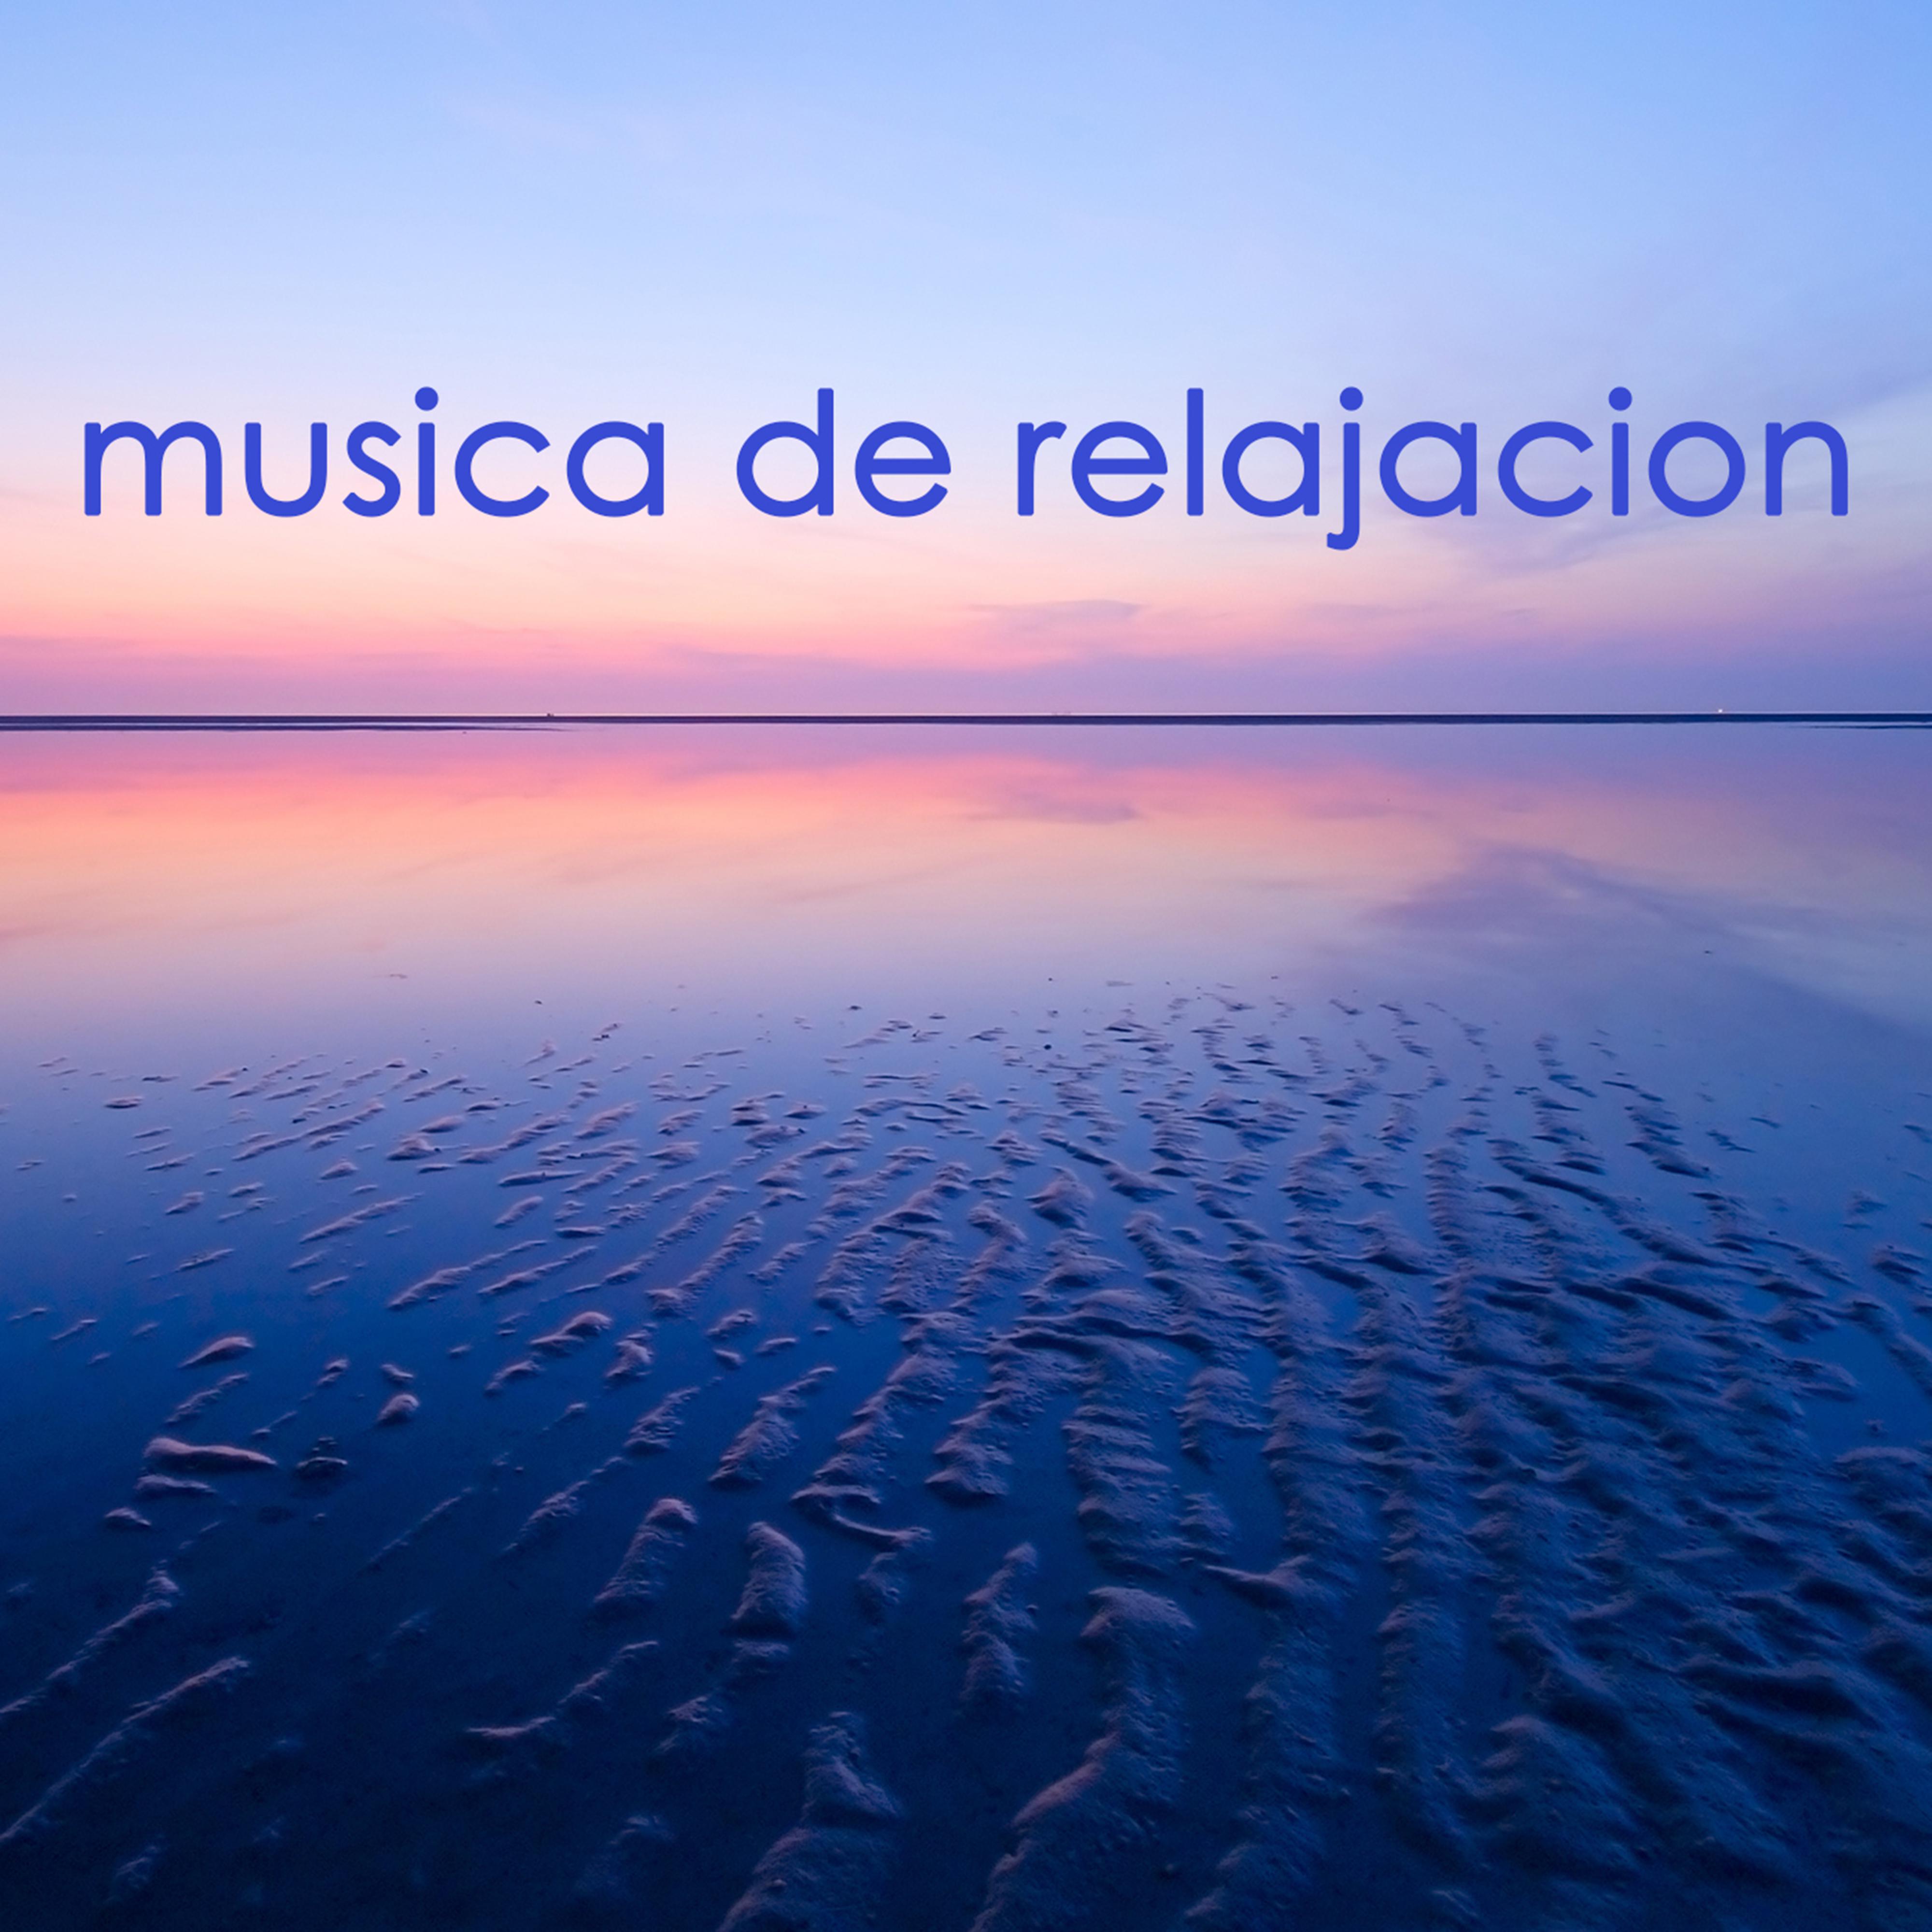 Musica de Relajacion -  Musica Relajante para Dormir y Musica para Relajar la Mente con Sonidos de la Naturaleza